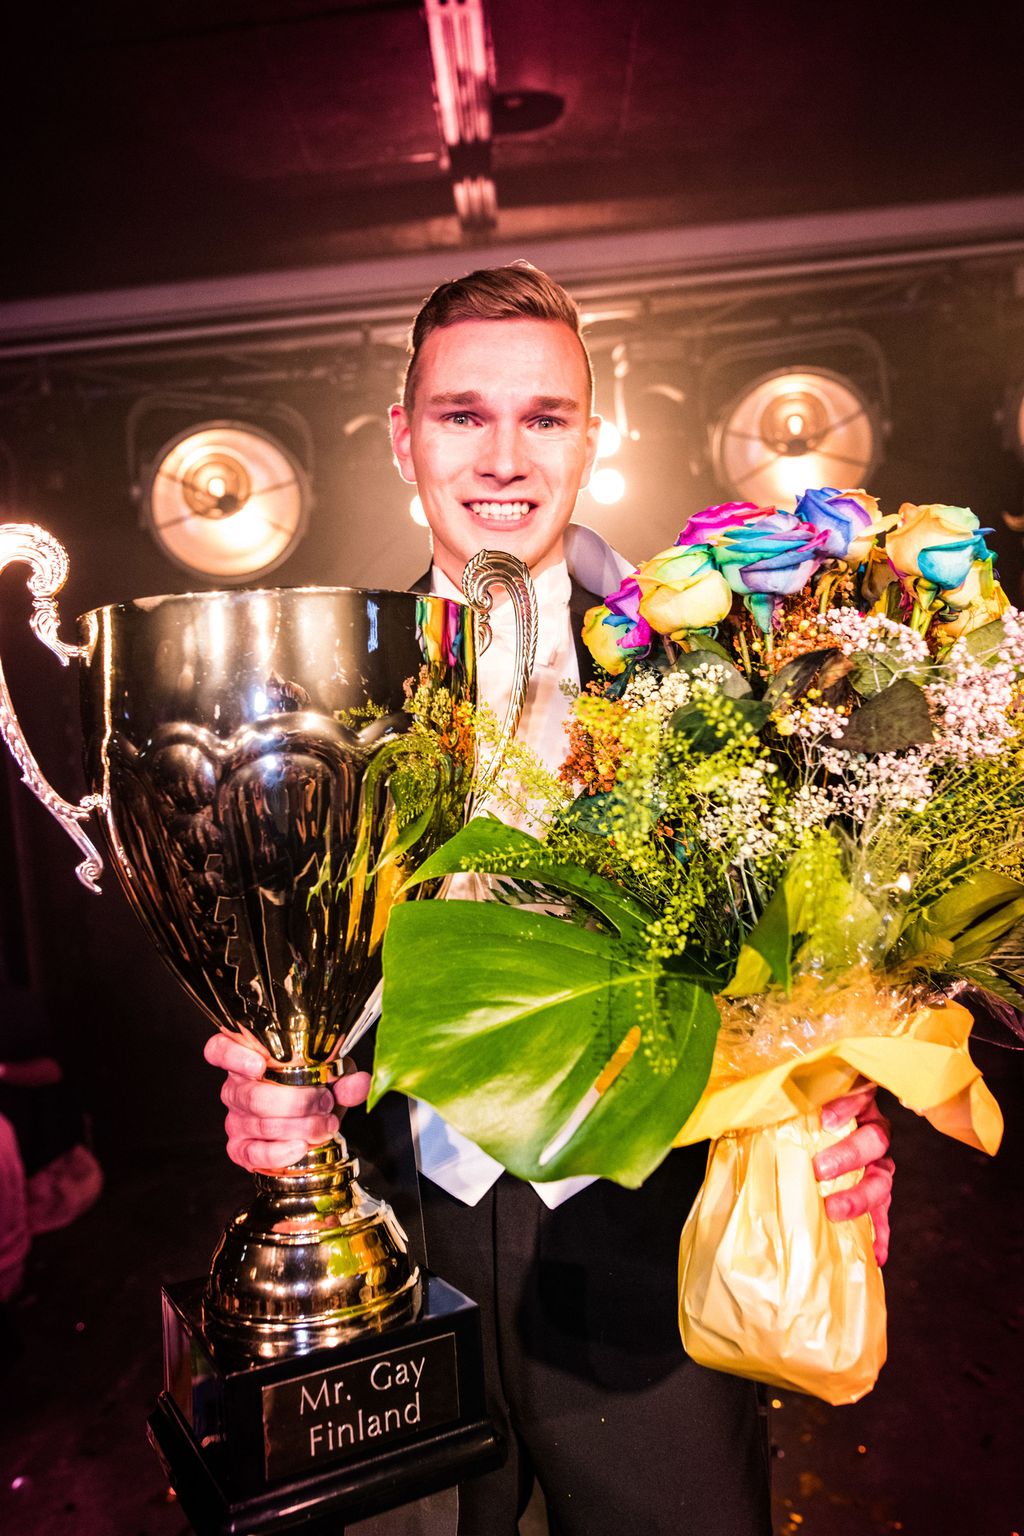 Vuoden 2019 Mr. Gay Finland on 23-vuotias Konsta Nupponen - ”Jokaisen on tunnettava itsensä tervetulleeksi omana itsenään”